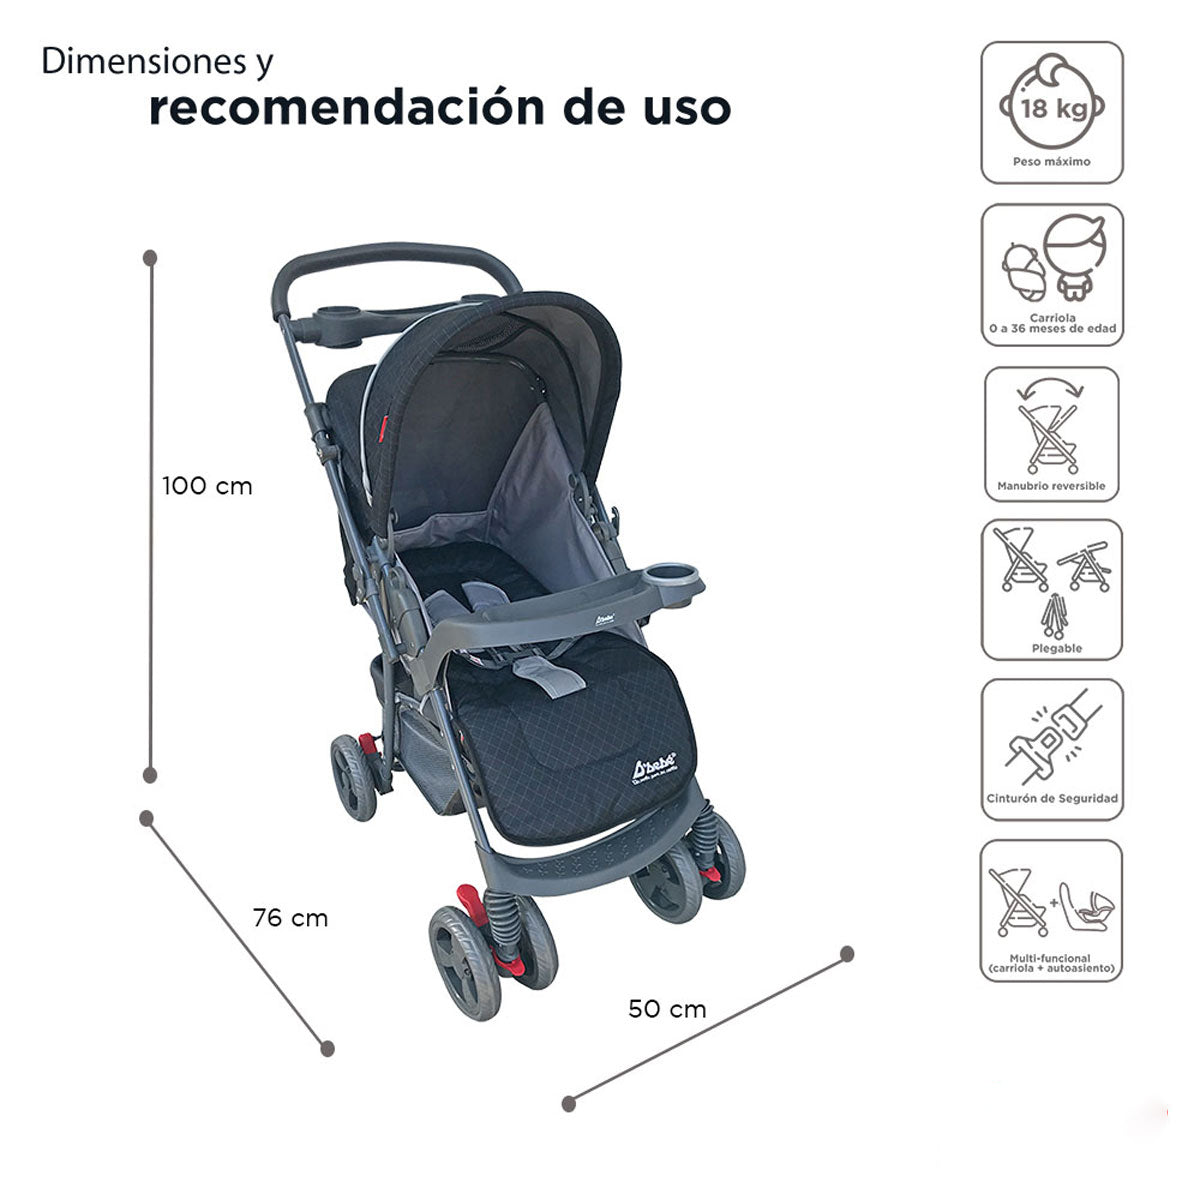 Set Carriola D'bebé Travel System Star Baby de 0 a 36 meses